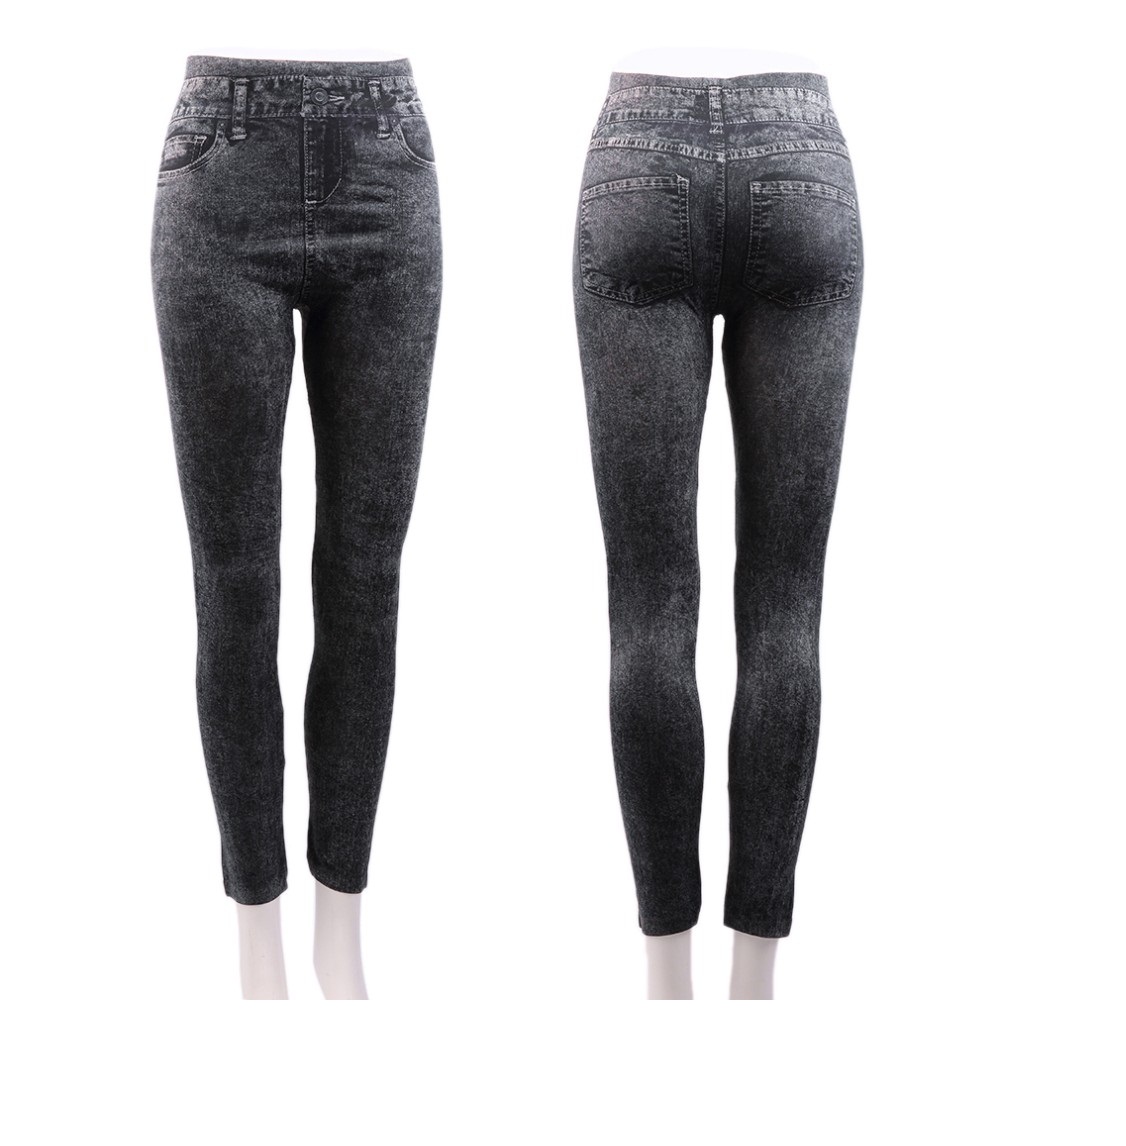 Buy Leggings That Look Like Jeans